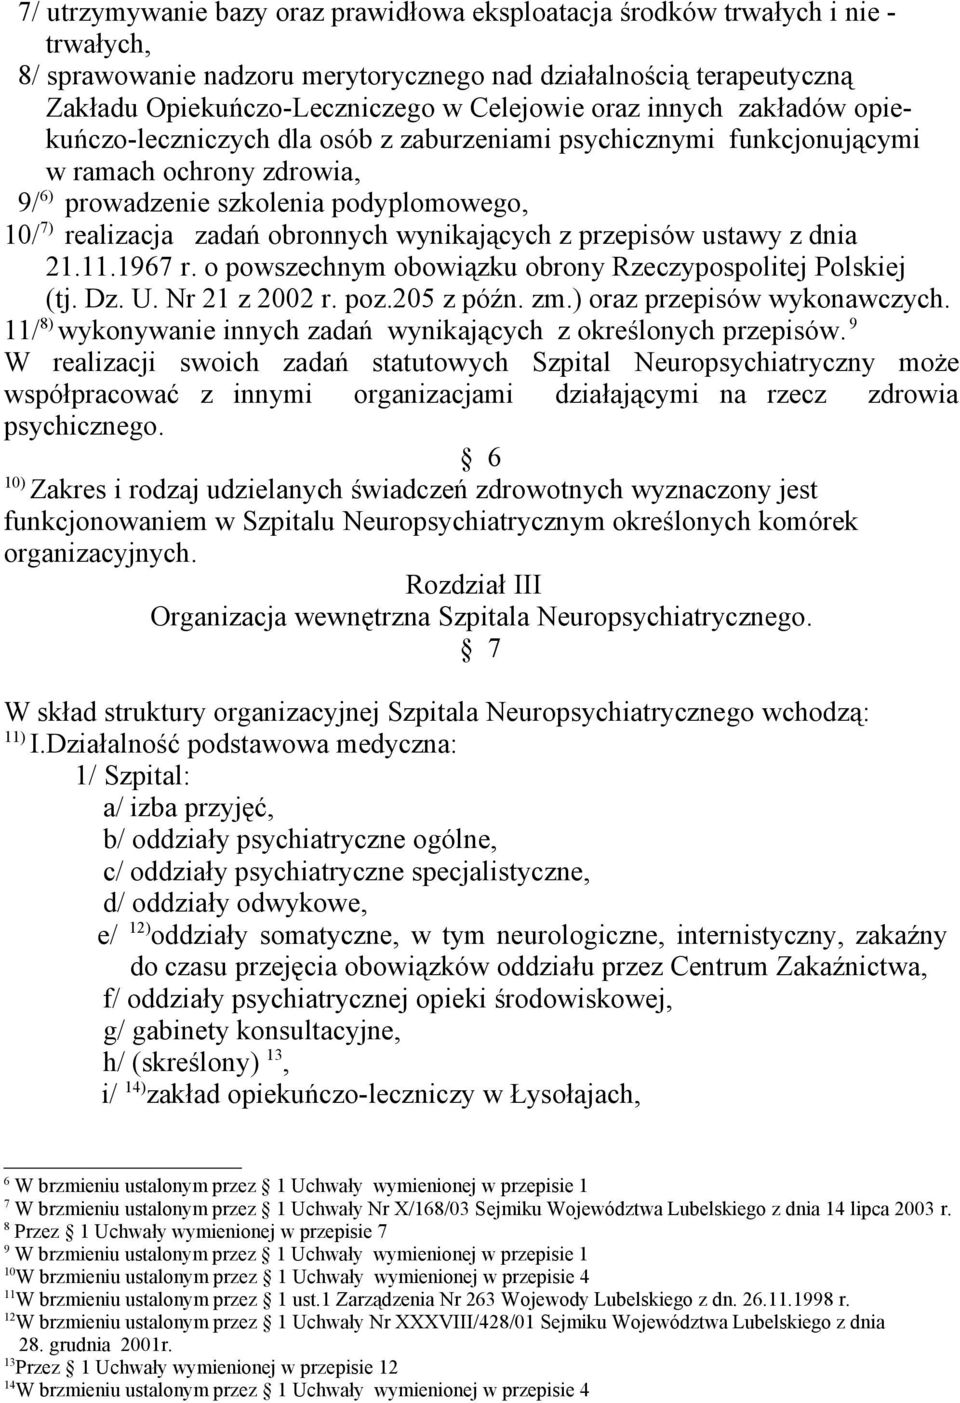 wynikających z przepisów ustawy z dnia 21.11.1967 r. o powszechnym obowiązku obrony Rzeczypospolitej Polskiej (tj. Dz. U. Nr 21 z 2002 r. poz.205 z późn. zm.) oraz przepisów wykonawczych.